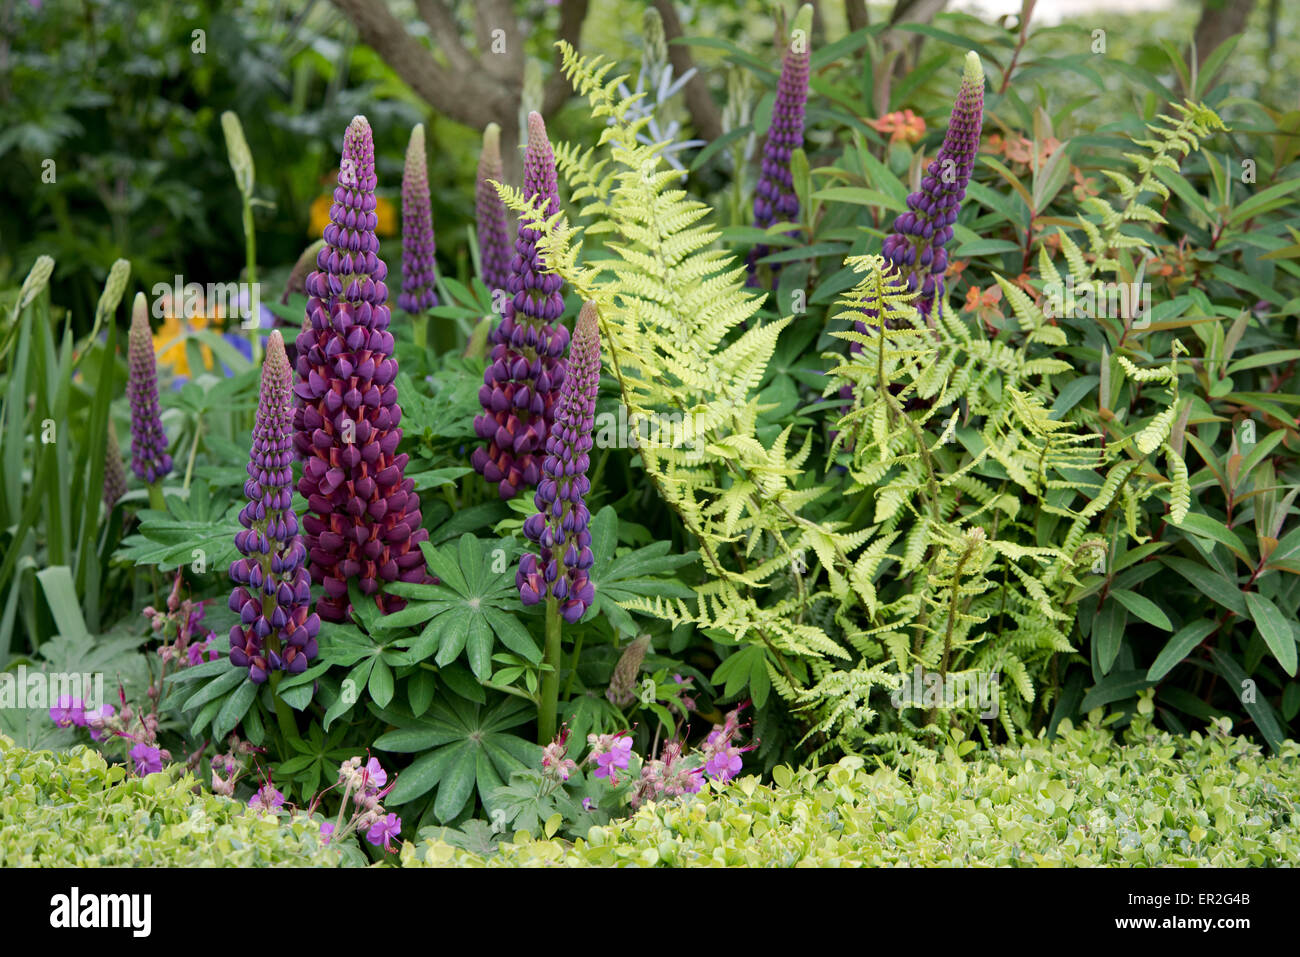 Un close-up de color púrpura, altramuces y helechos en la salud ciudades jardín en el Chelsea Flower Show 2015 Foto de stock